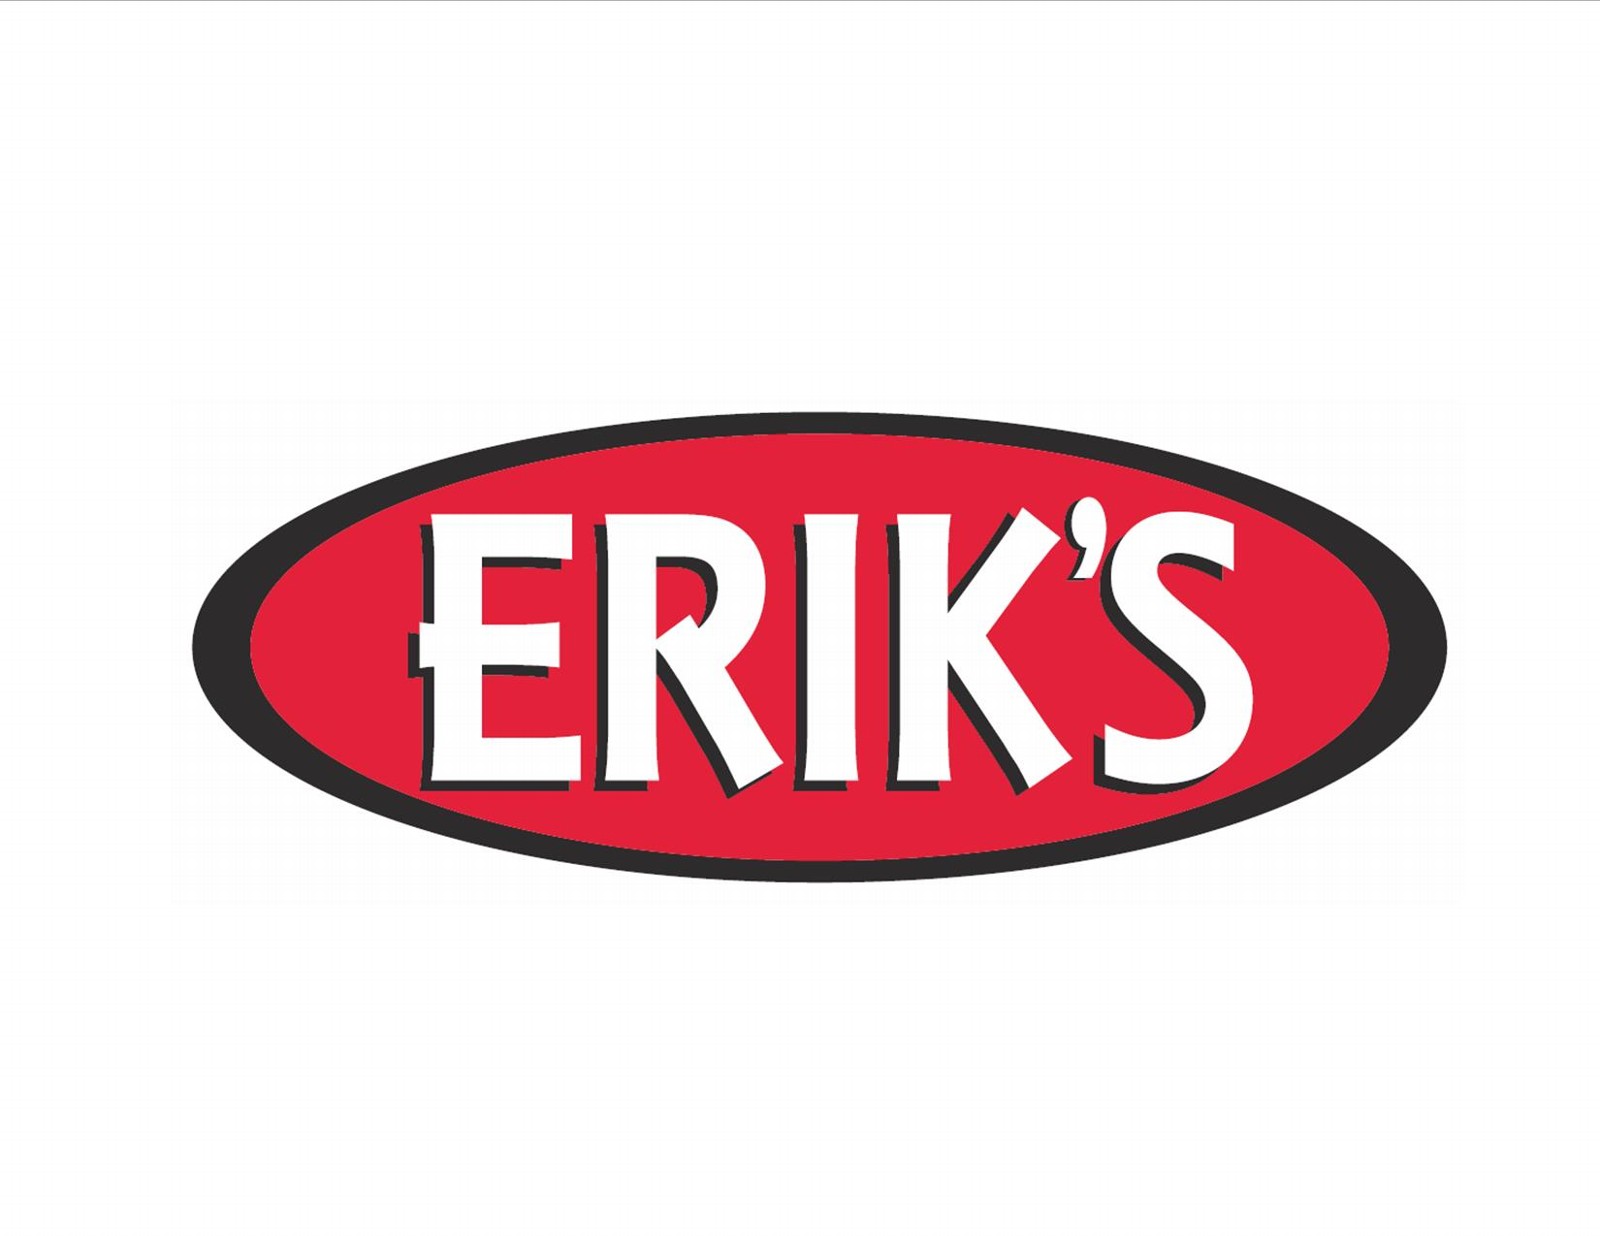 Erick's